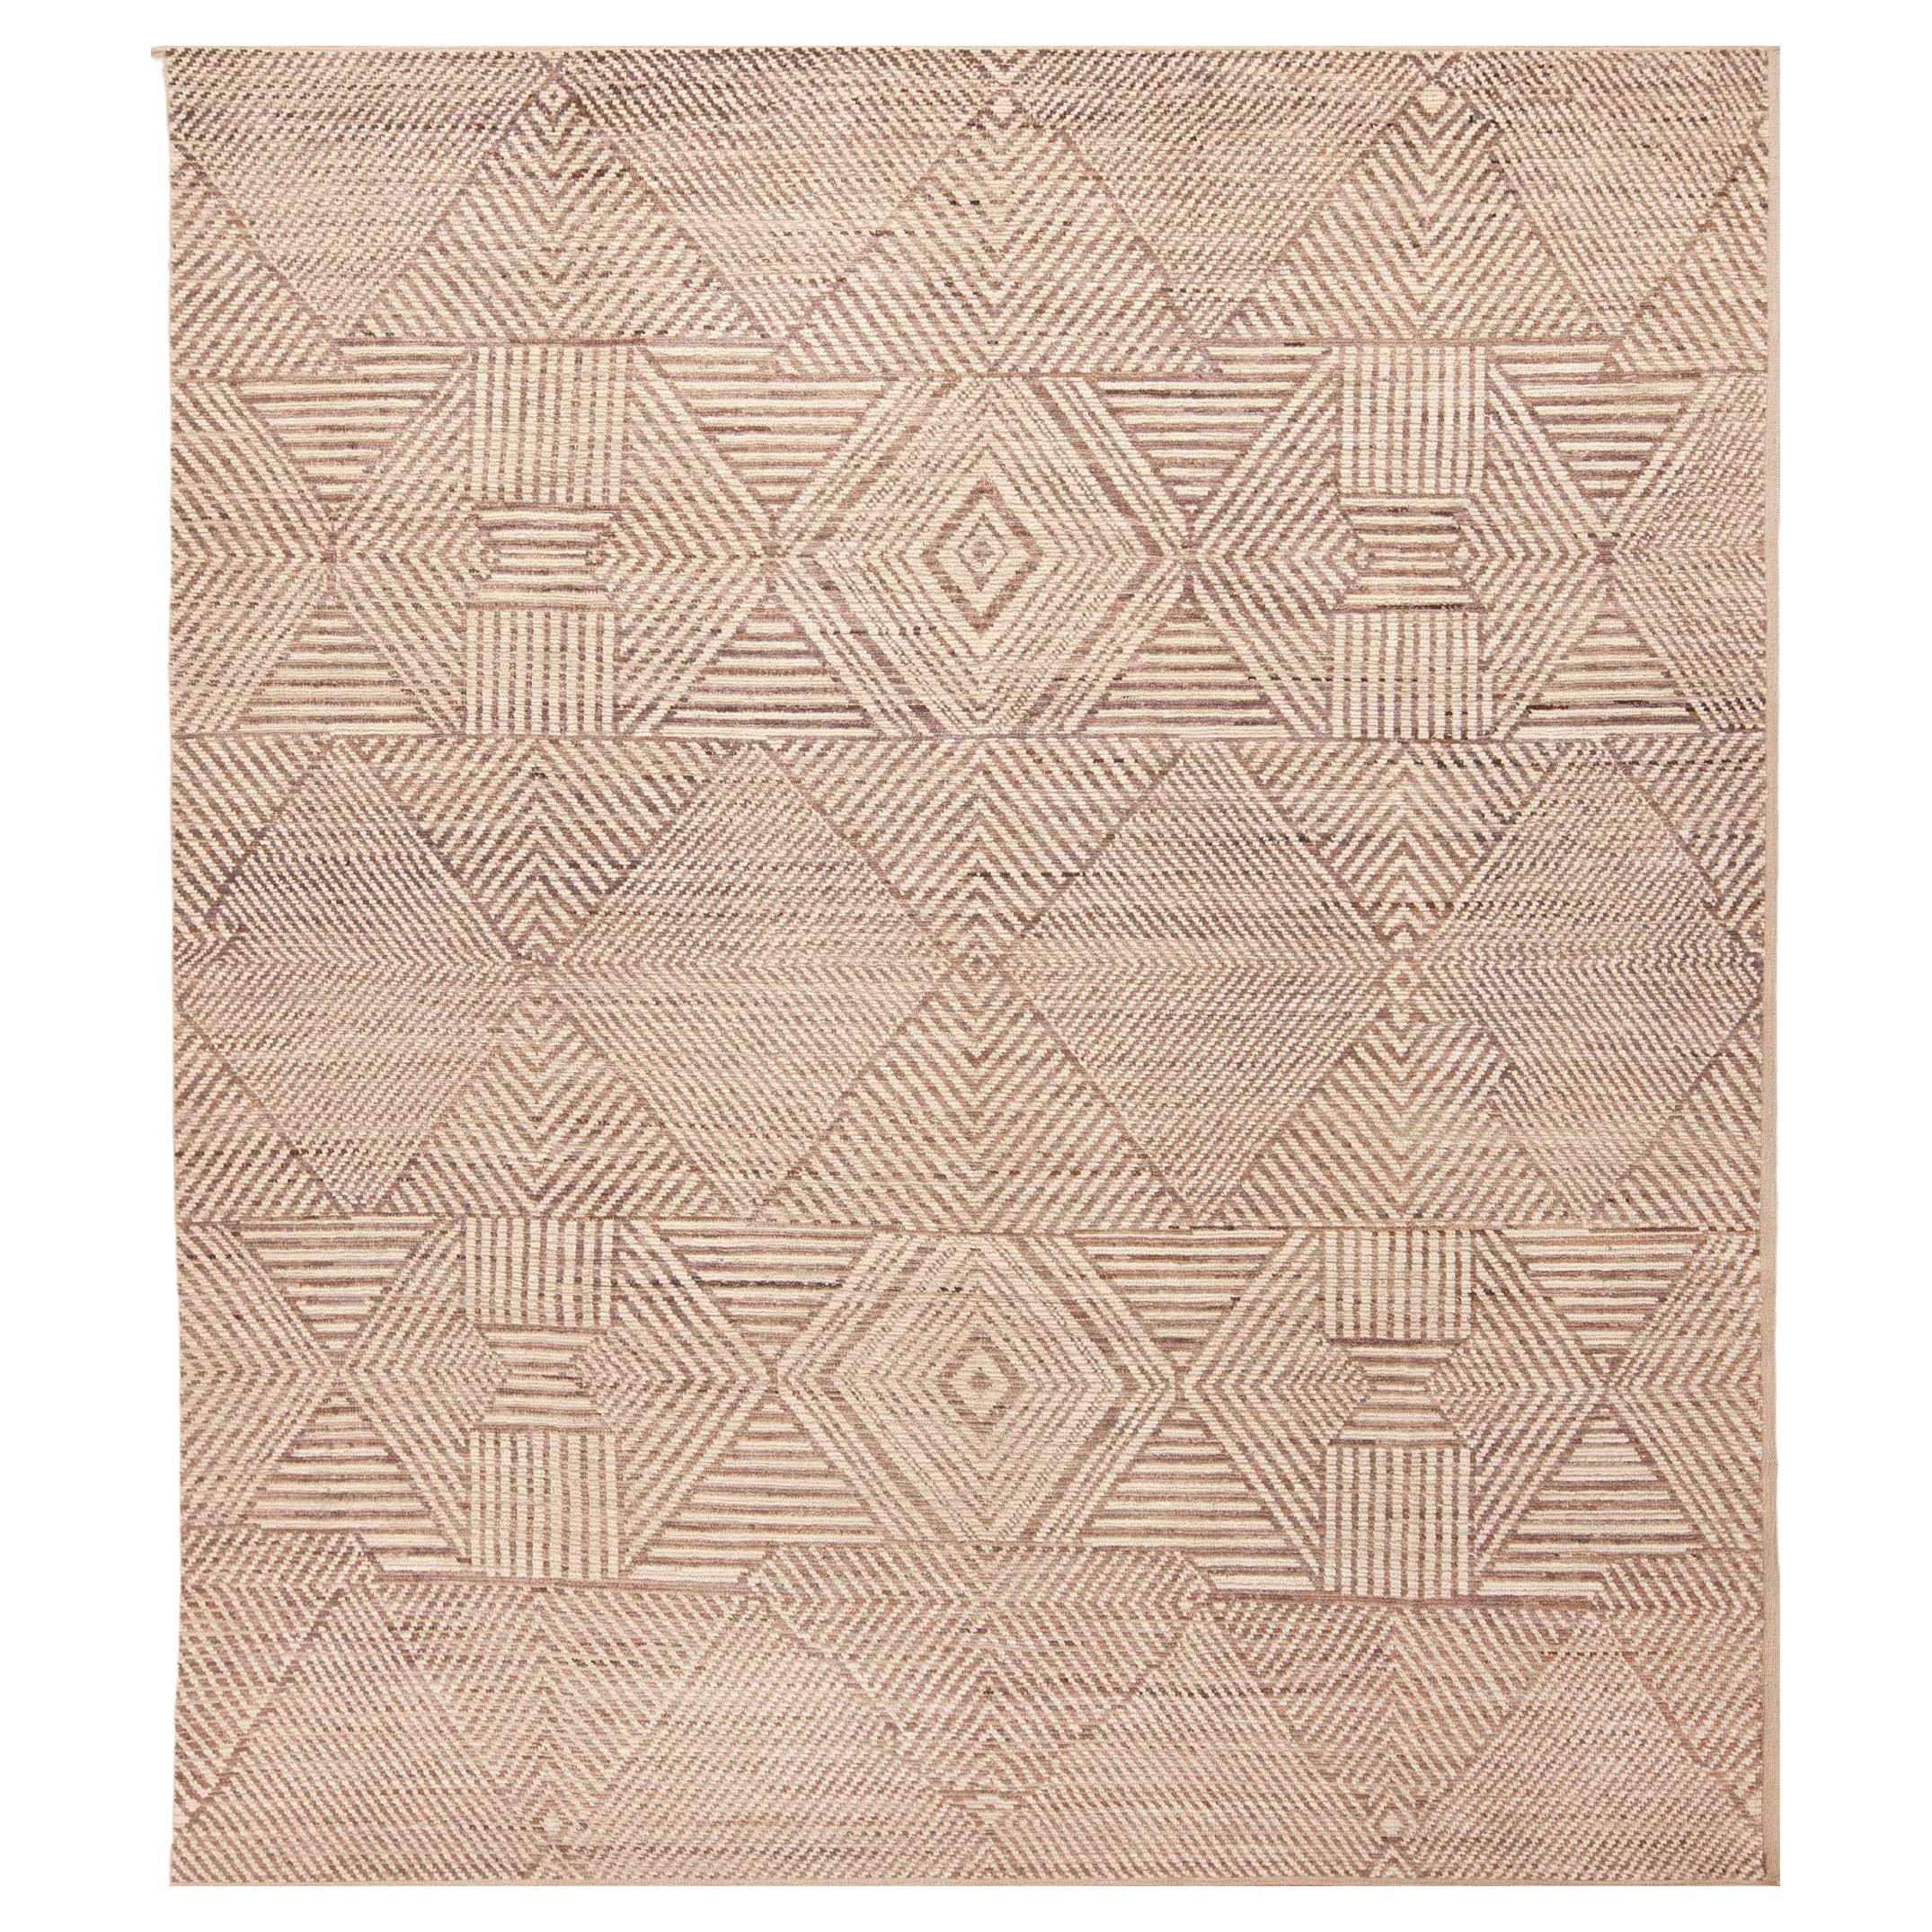 Tapis de la collection Nazmiyal à motifs tribaux modernes de couleurs neutres 9' x 10'